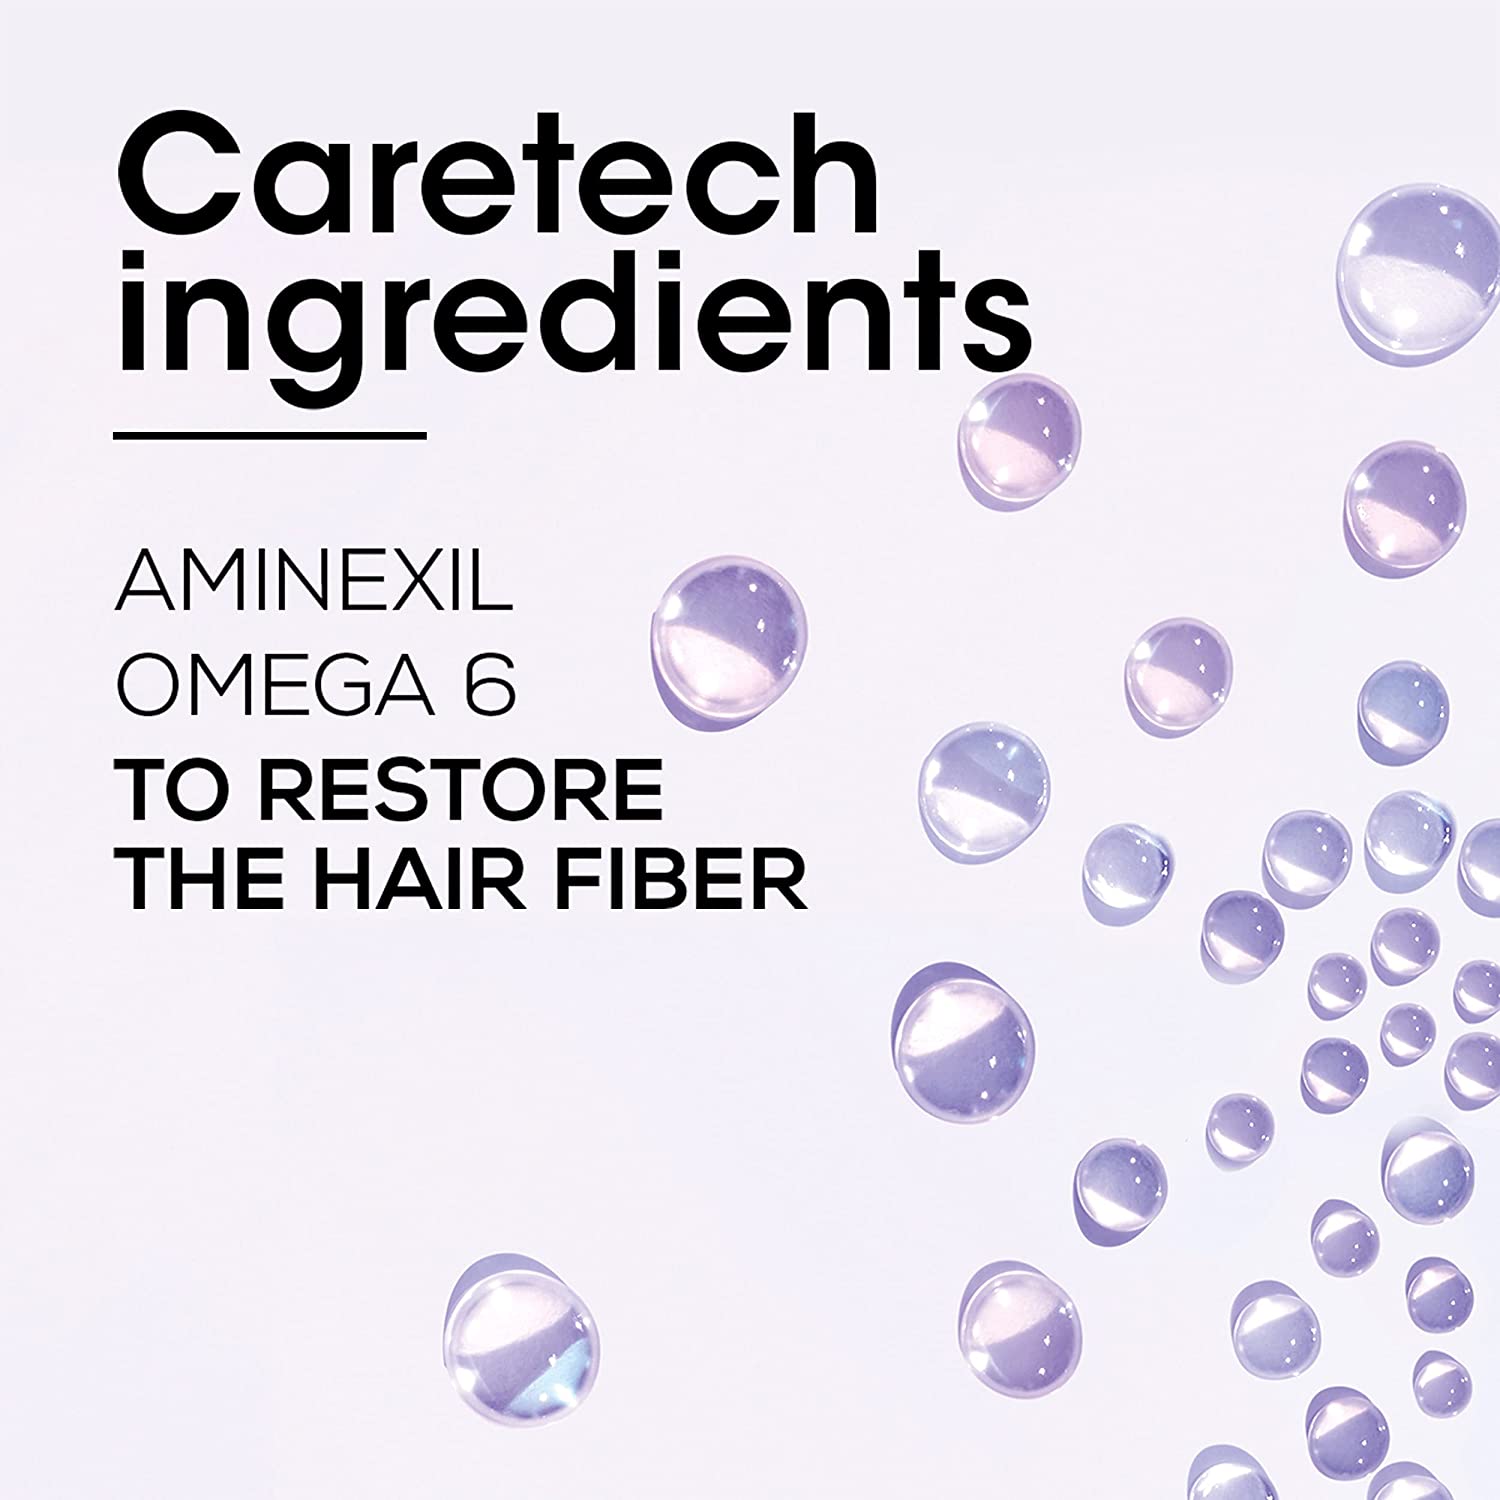 L'Oréal Professionnel Serie Expert Aminexil Advanced